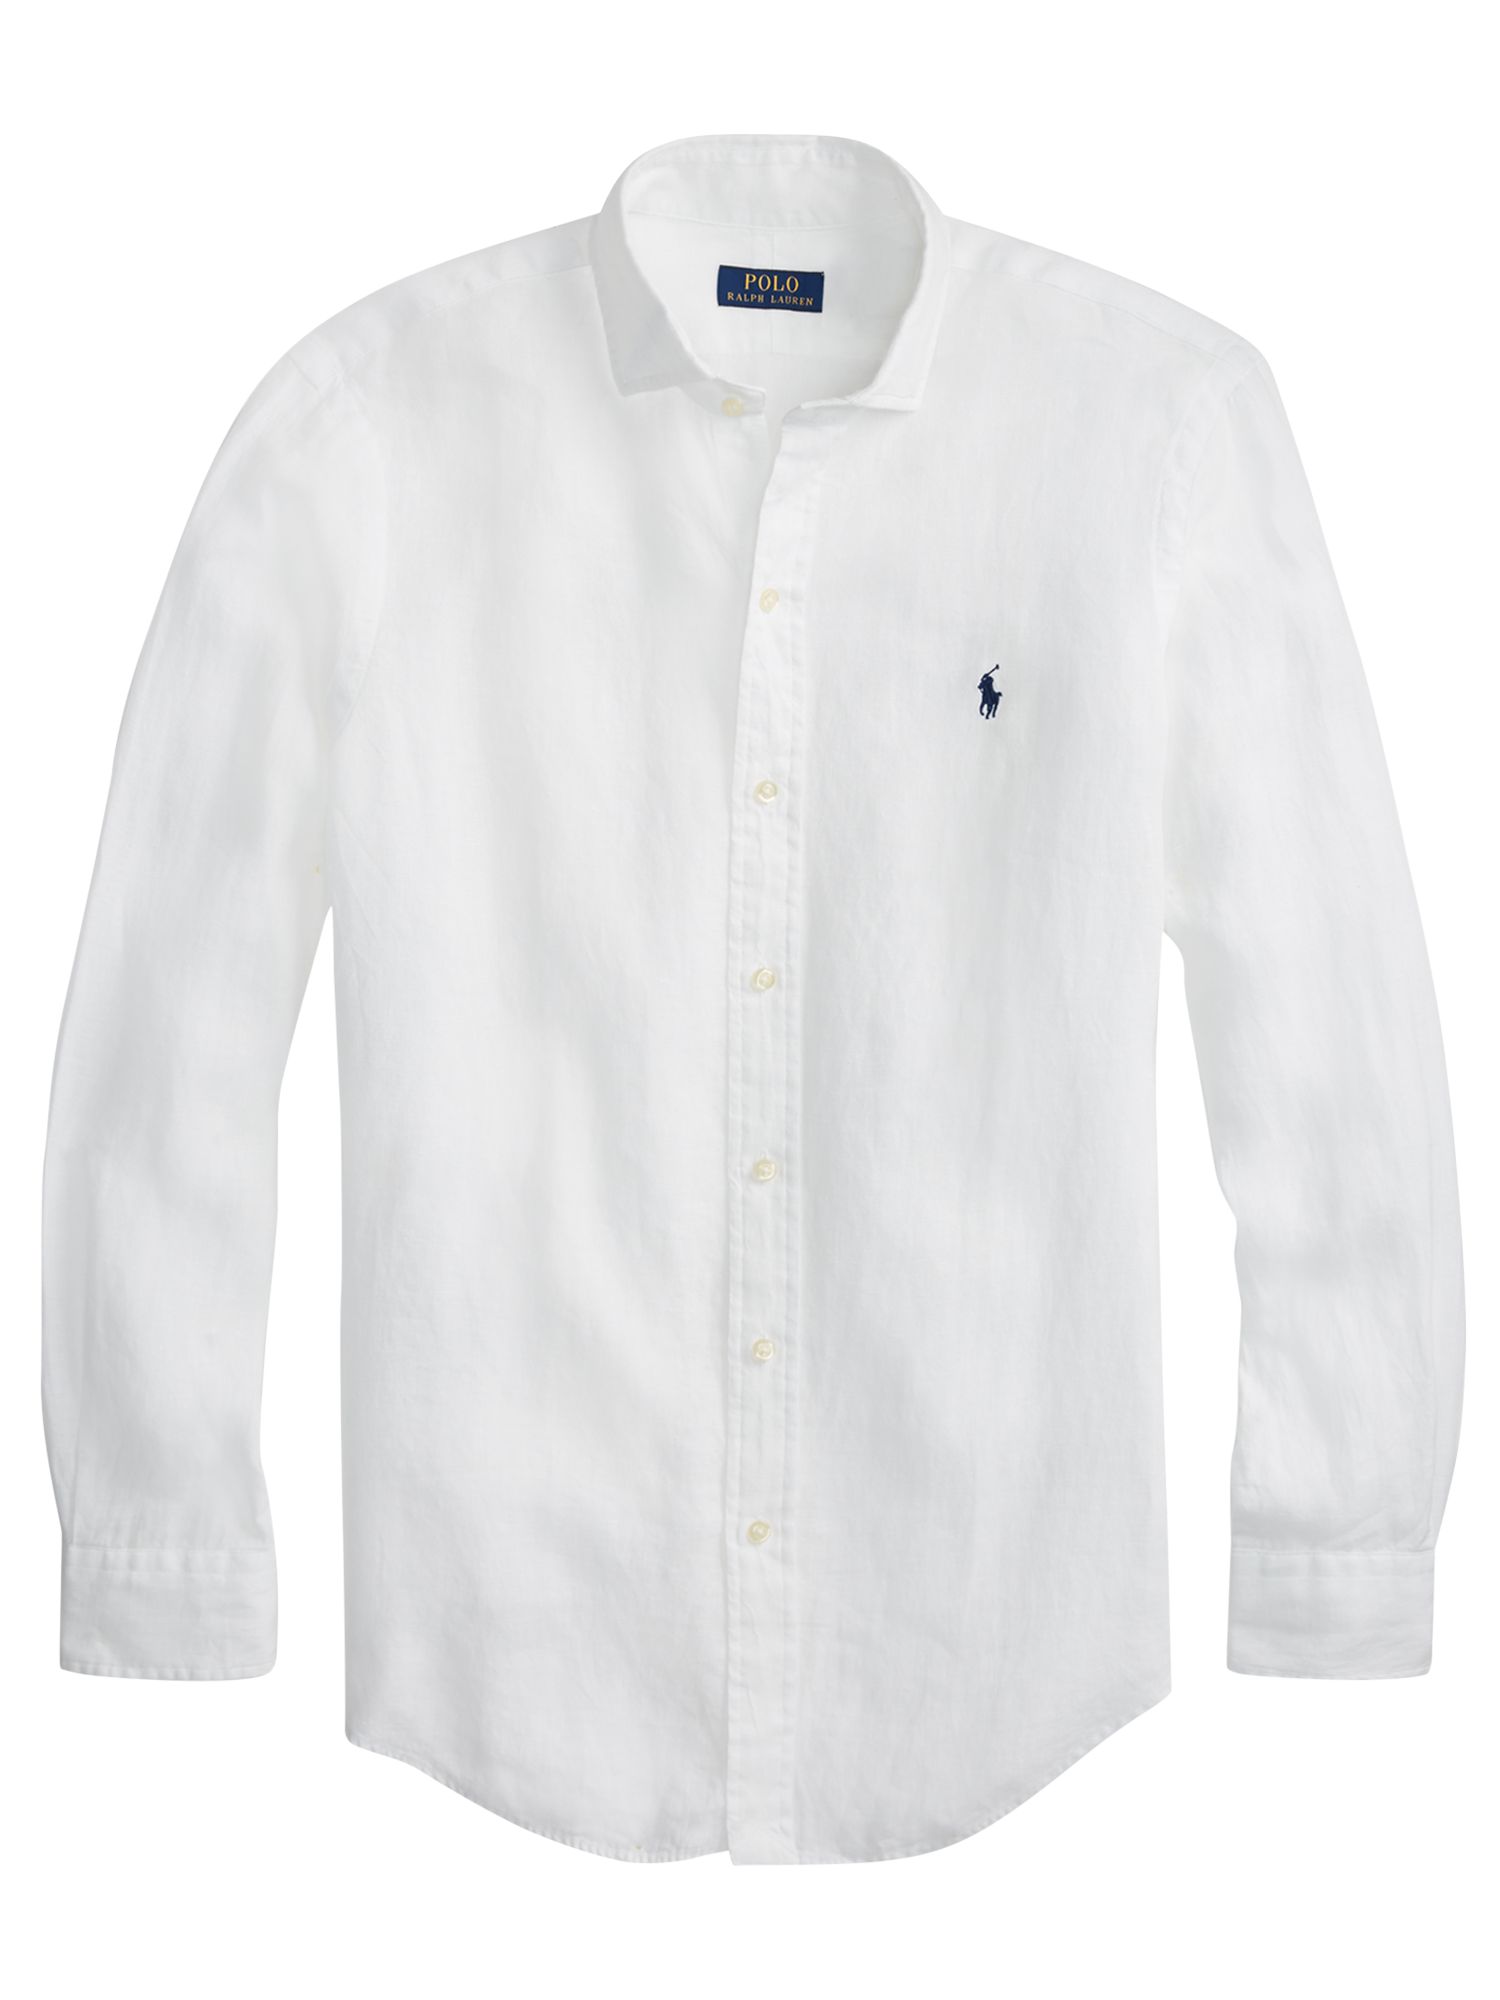 polo ralph lauren linen long sleeve shirt